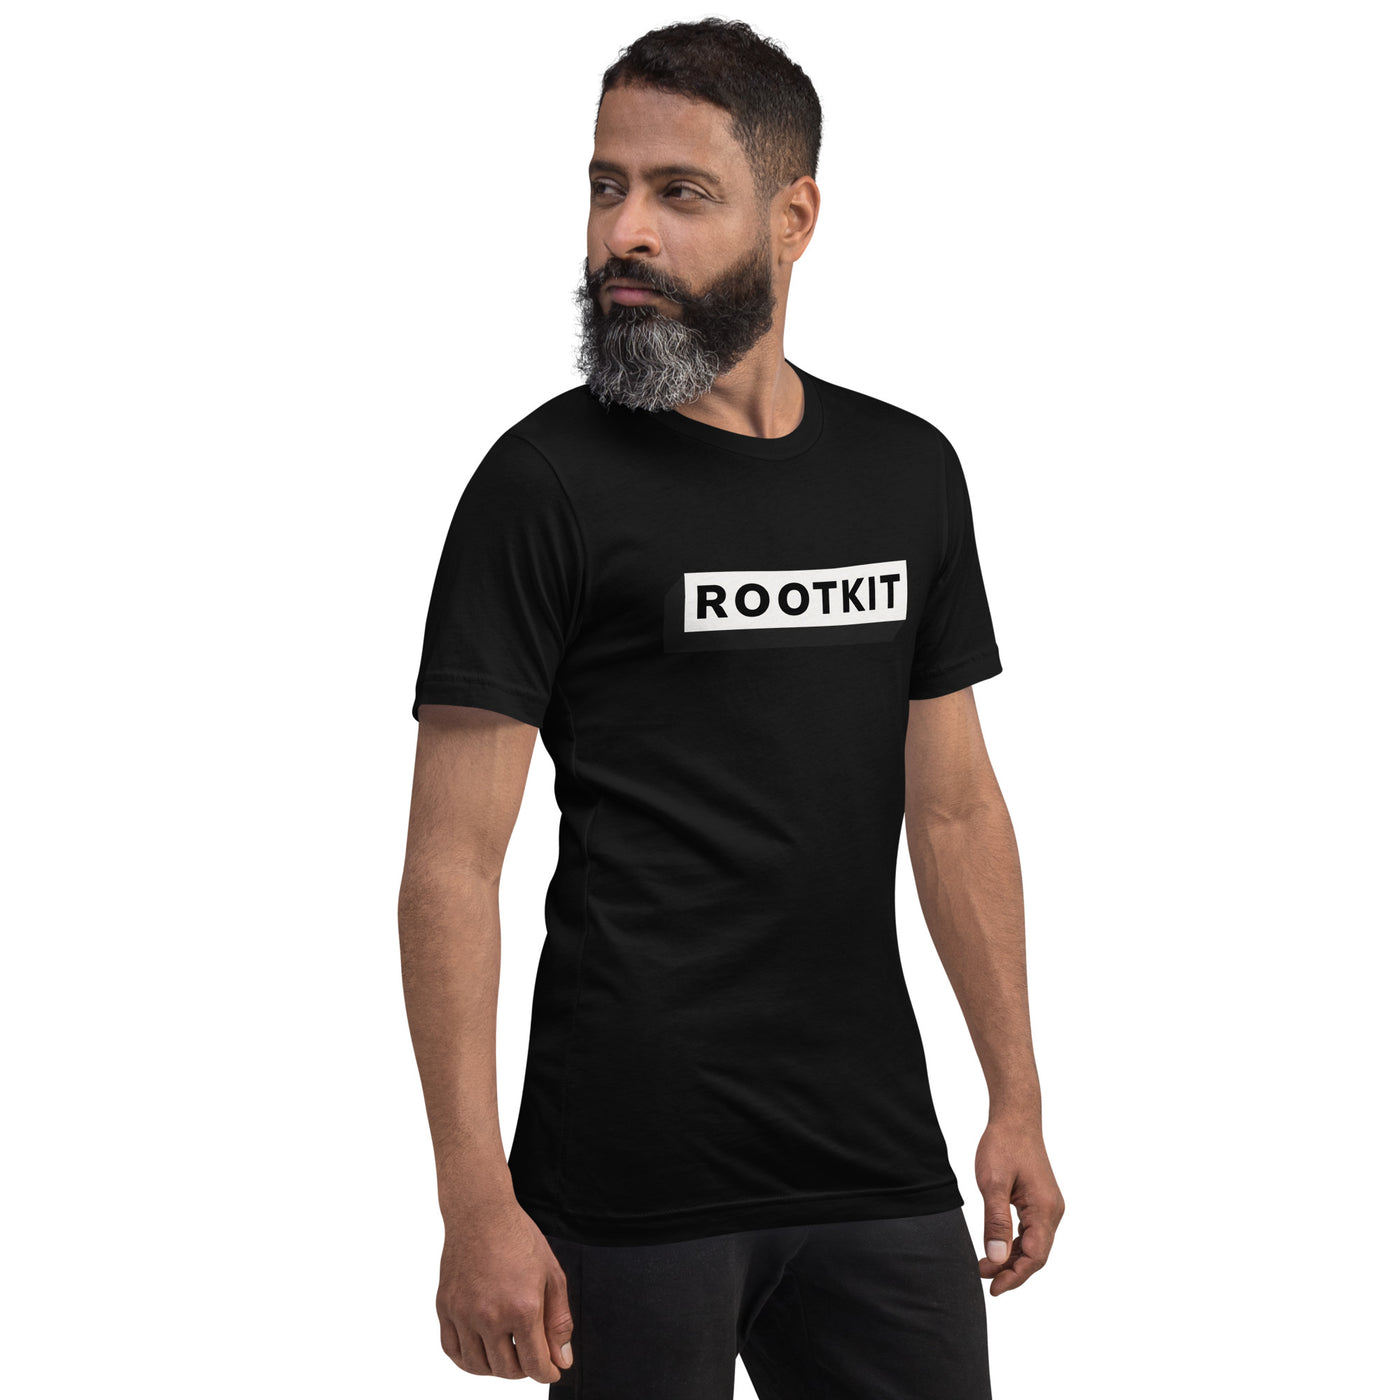 Rootkit - Unisex t-shirt